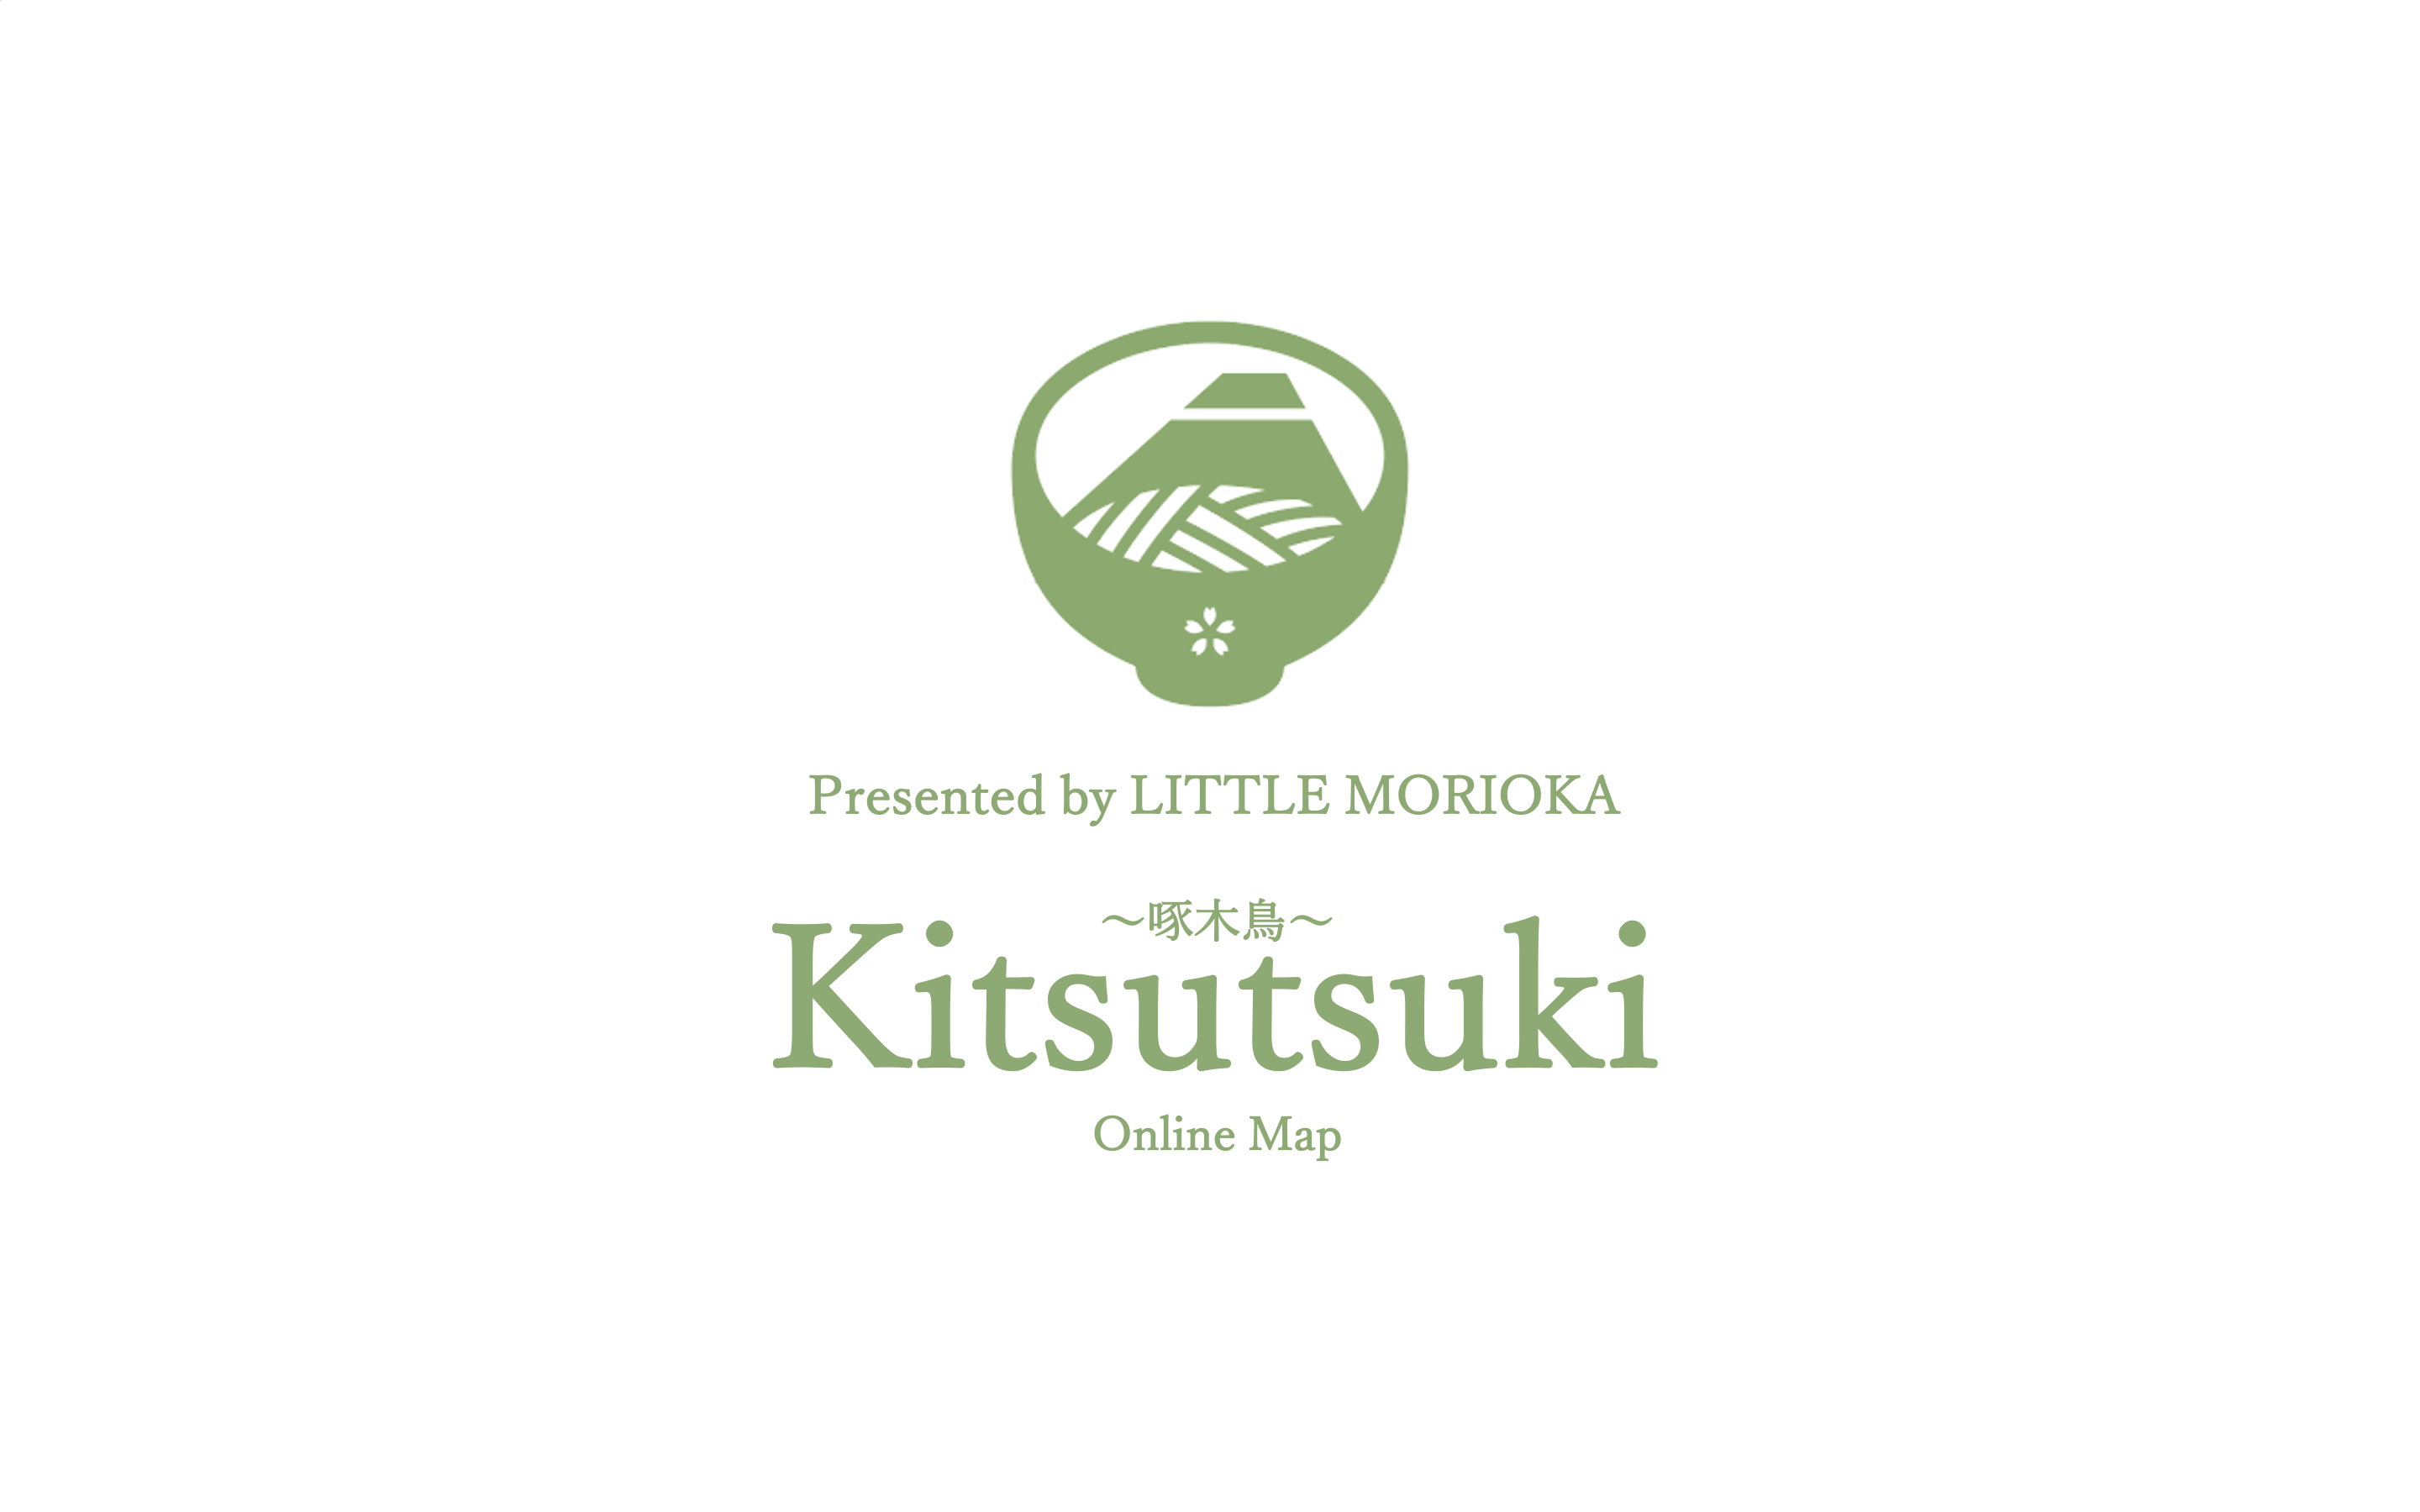 首都圏に住む盛岡好きに贈る 盛岡関連スポット100箇所を掲載したgoogleマップ上のオリジナルマイマップ Kitsutsuki を作成 リトルもりおか ちいさなもりおか を発信するメディア